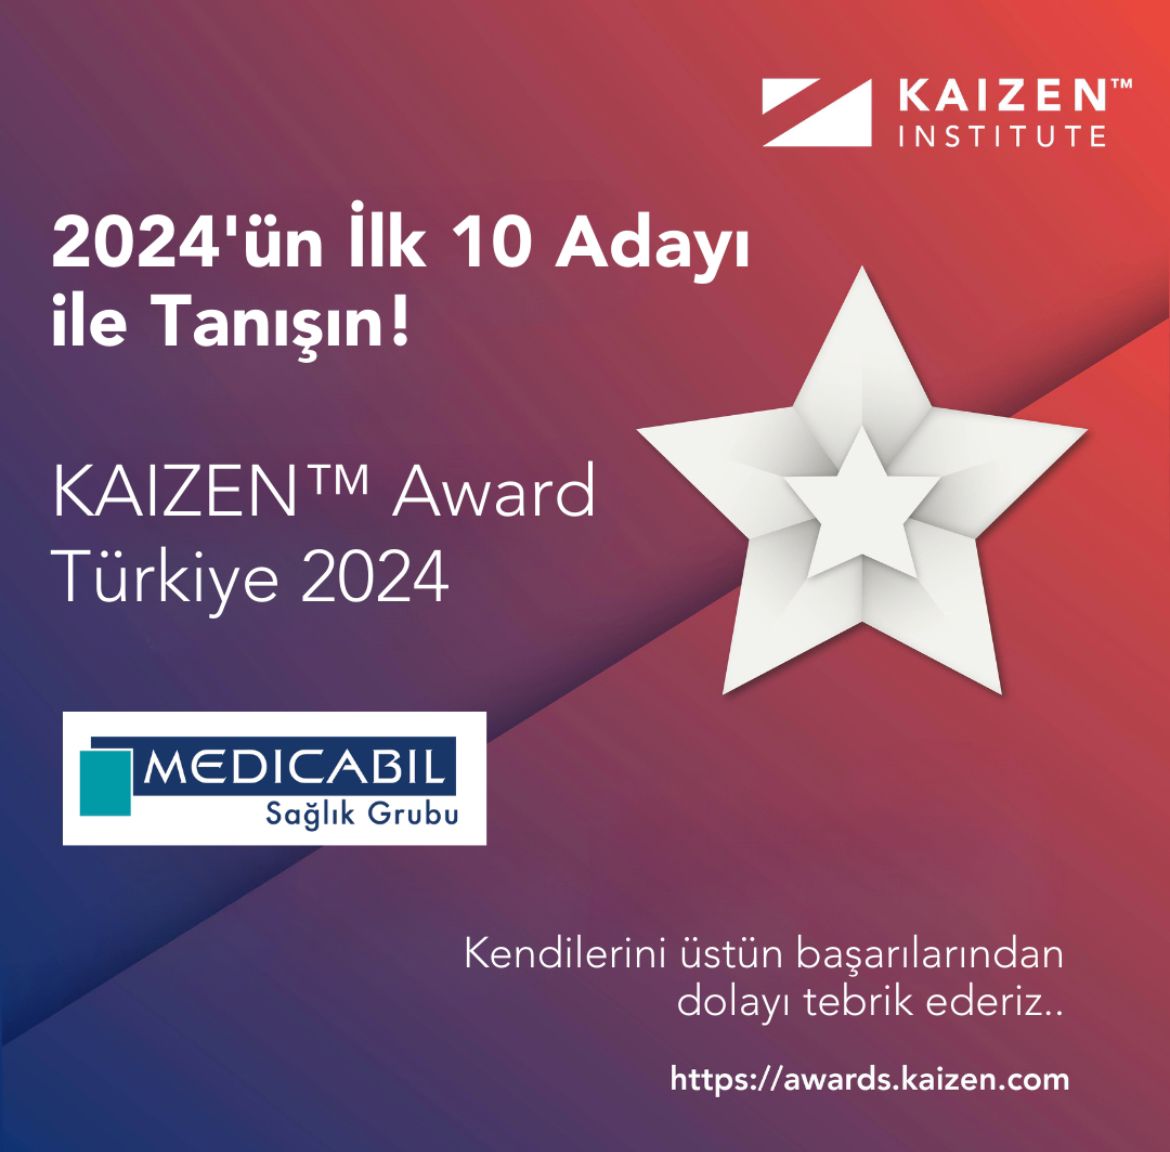 KAIZEN Award Türkiye 2024